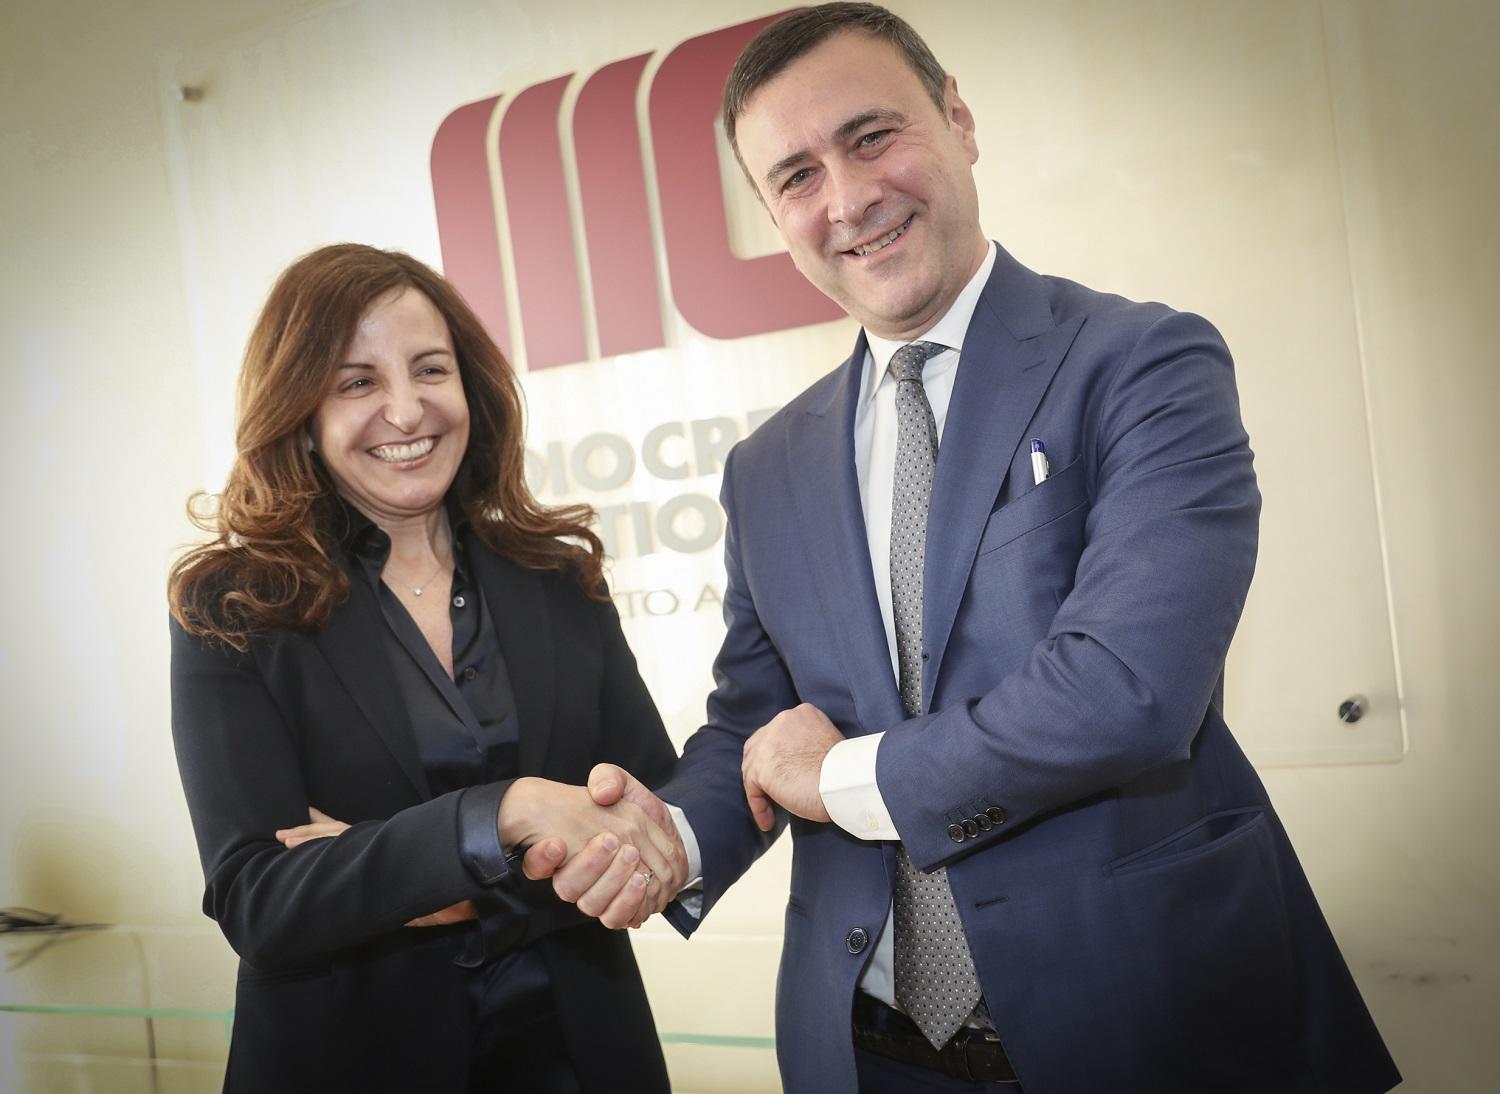 Insieme per supportare le PMI alla quotazione su AIM ITALIA. 4,2 miliardi di Euro la raccolta complessiva sul mercato AIM ITALIA. 8,2 milioni di Euro il dato medio di raccolta delle IPO del 2018.